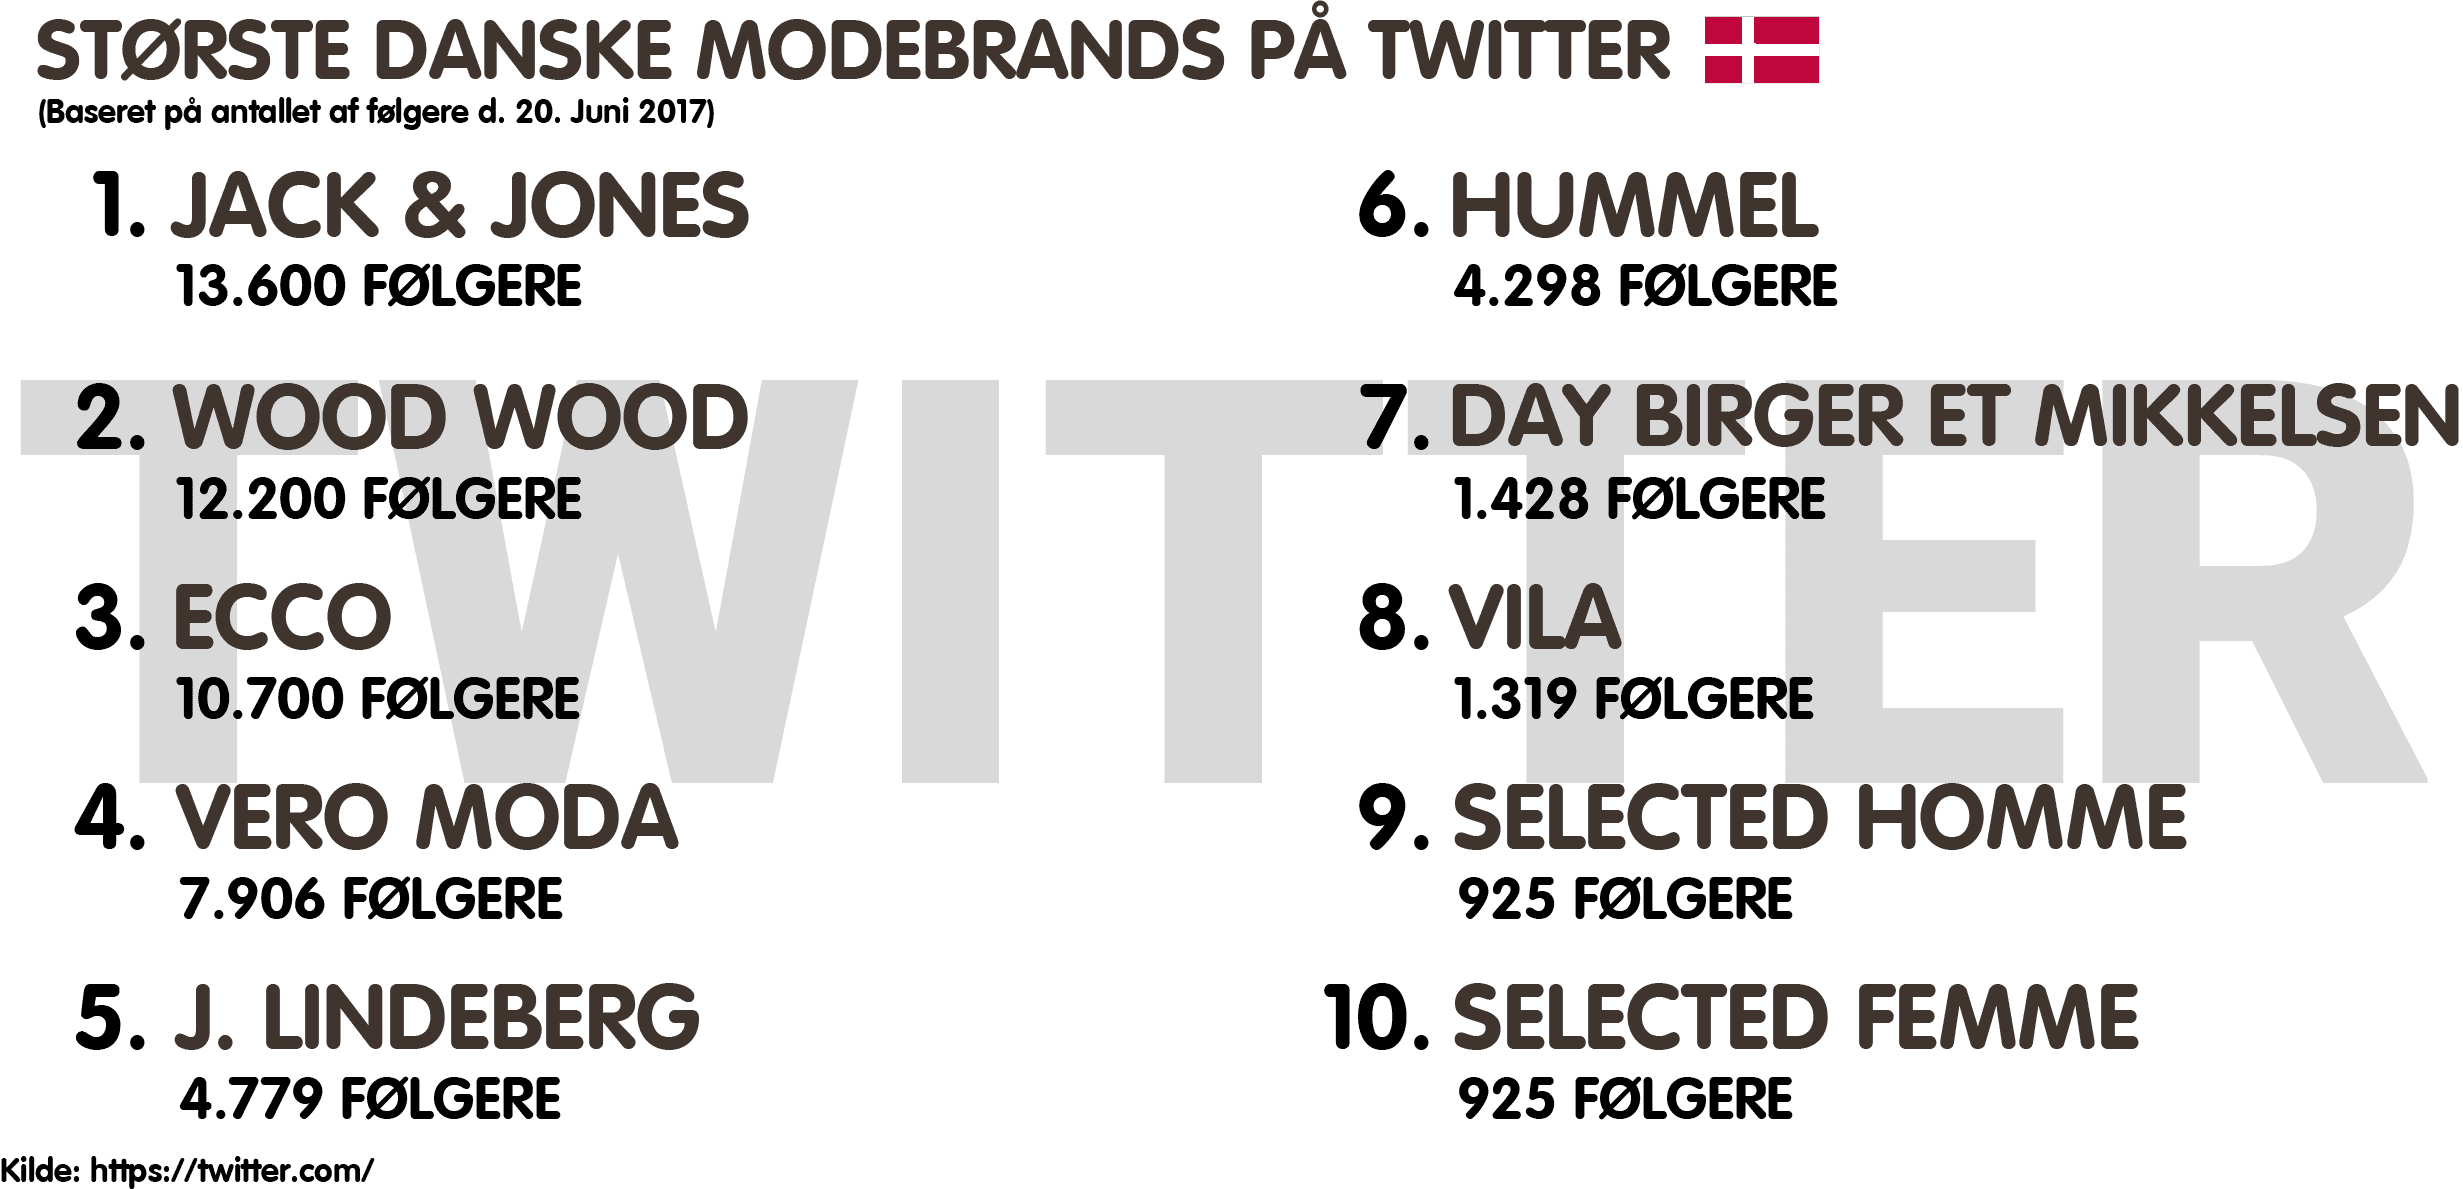 Største danske modebrands på Twitter